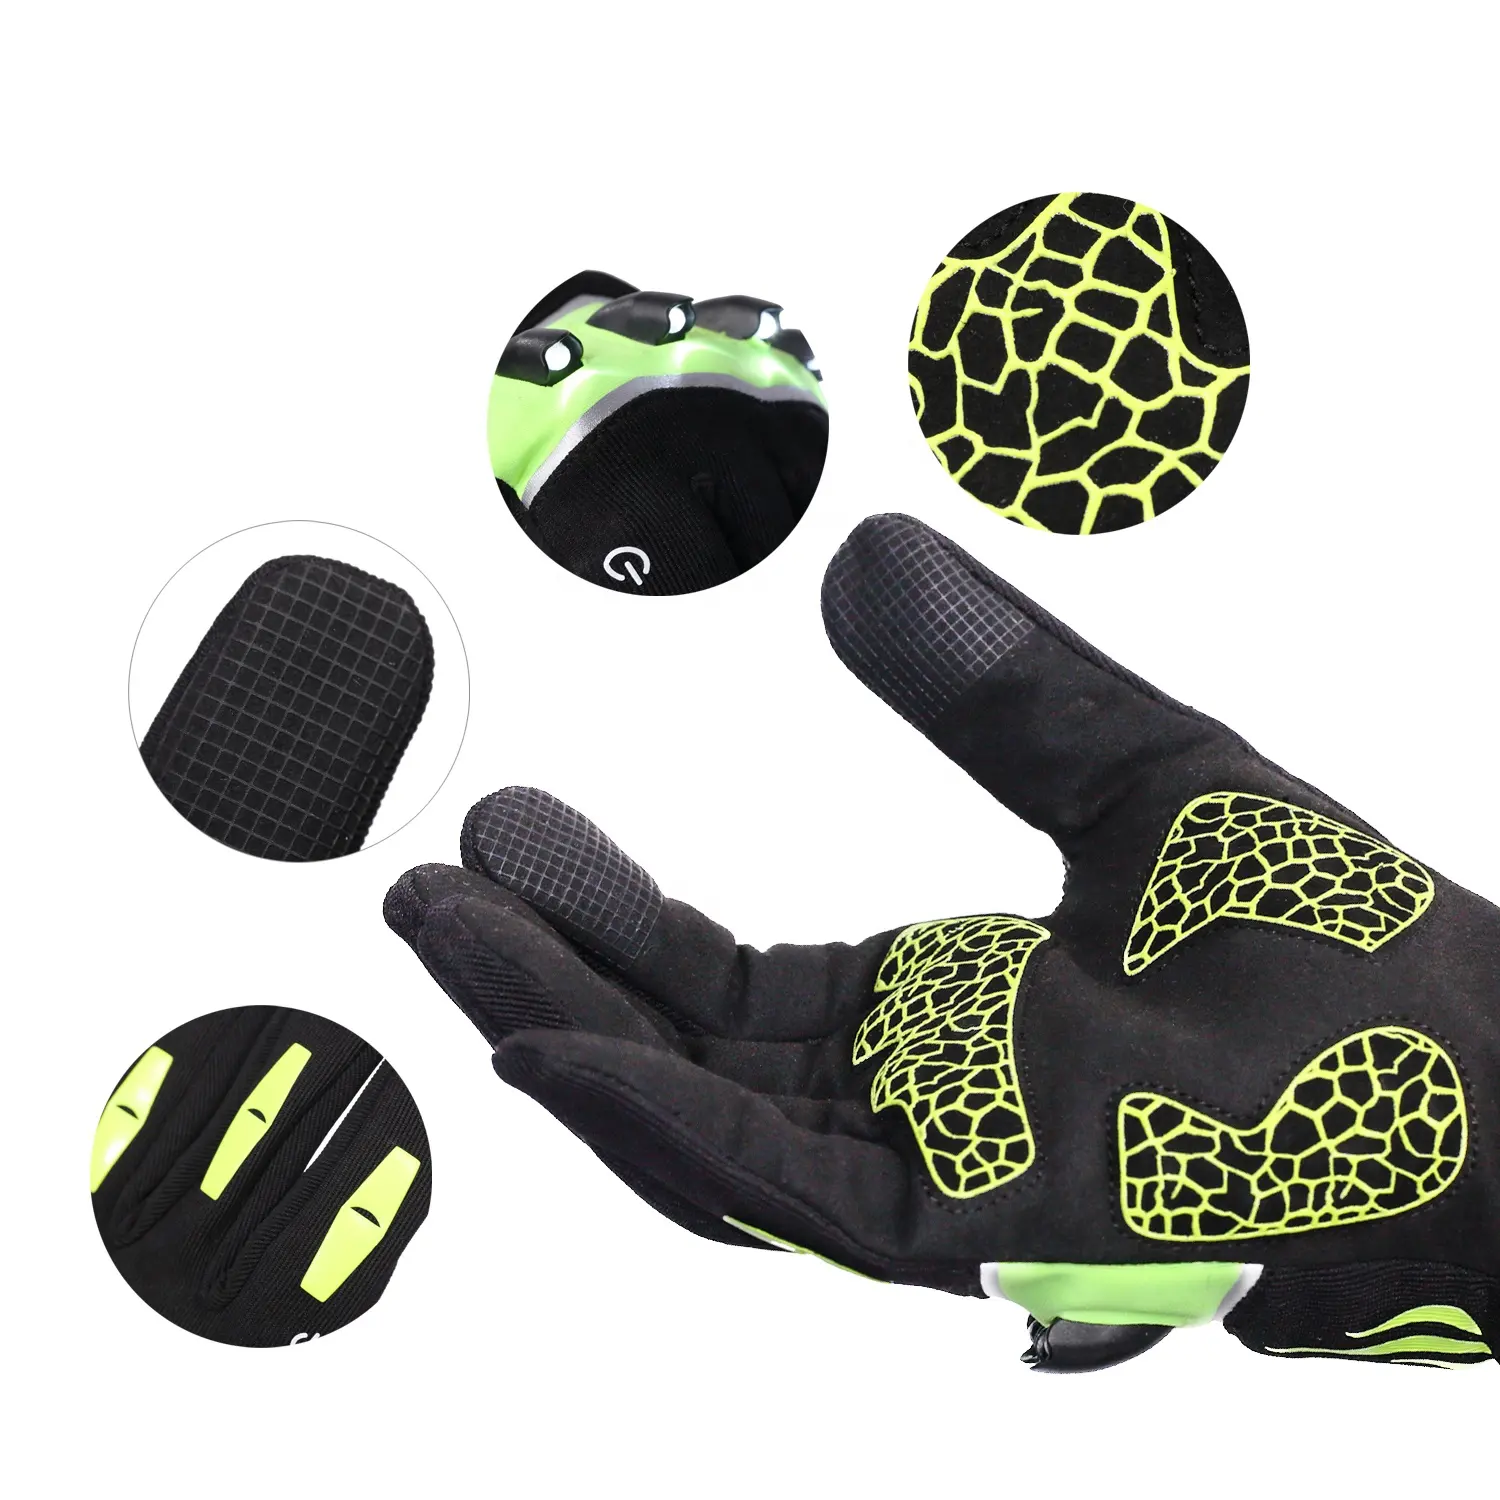 Fishing Short finger gloves LED Glove Flashlight Camping Hiking Lights Multipurpose LED Bike Glove